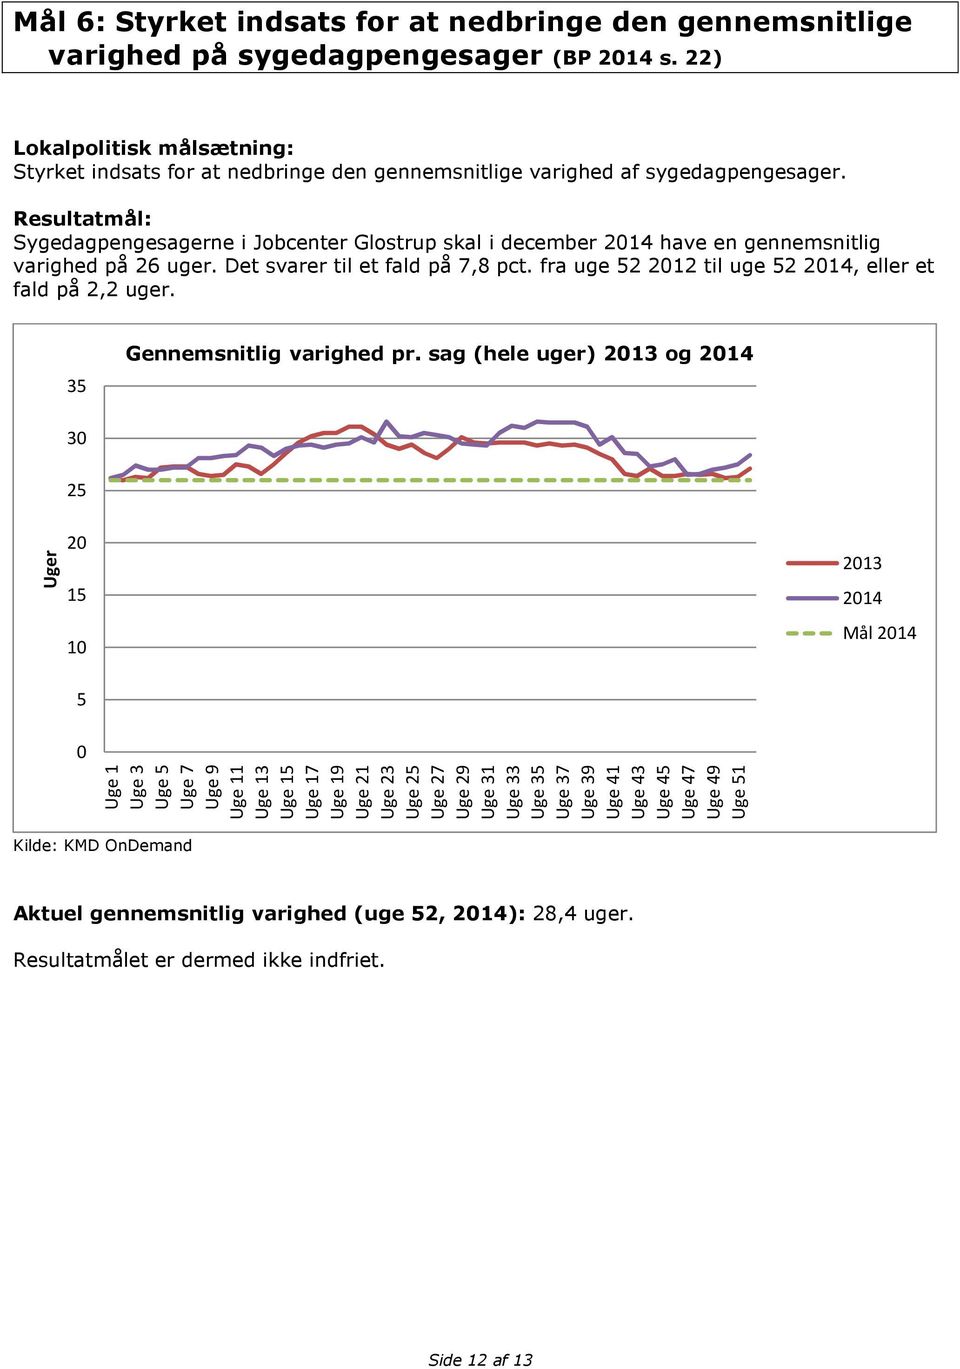 Sygedagpengesagerne i Jobcenter Glostrup skal i december 2014 have en gennemsnitlig varighed på 26 uger. Det svarer til et fald på 7,8 pct. fra uge 52 2012 til uge 52 2014, eller et fald på 2,2 uger.